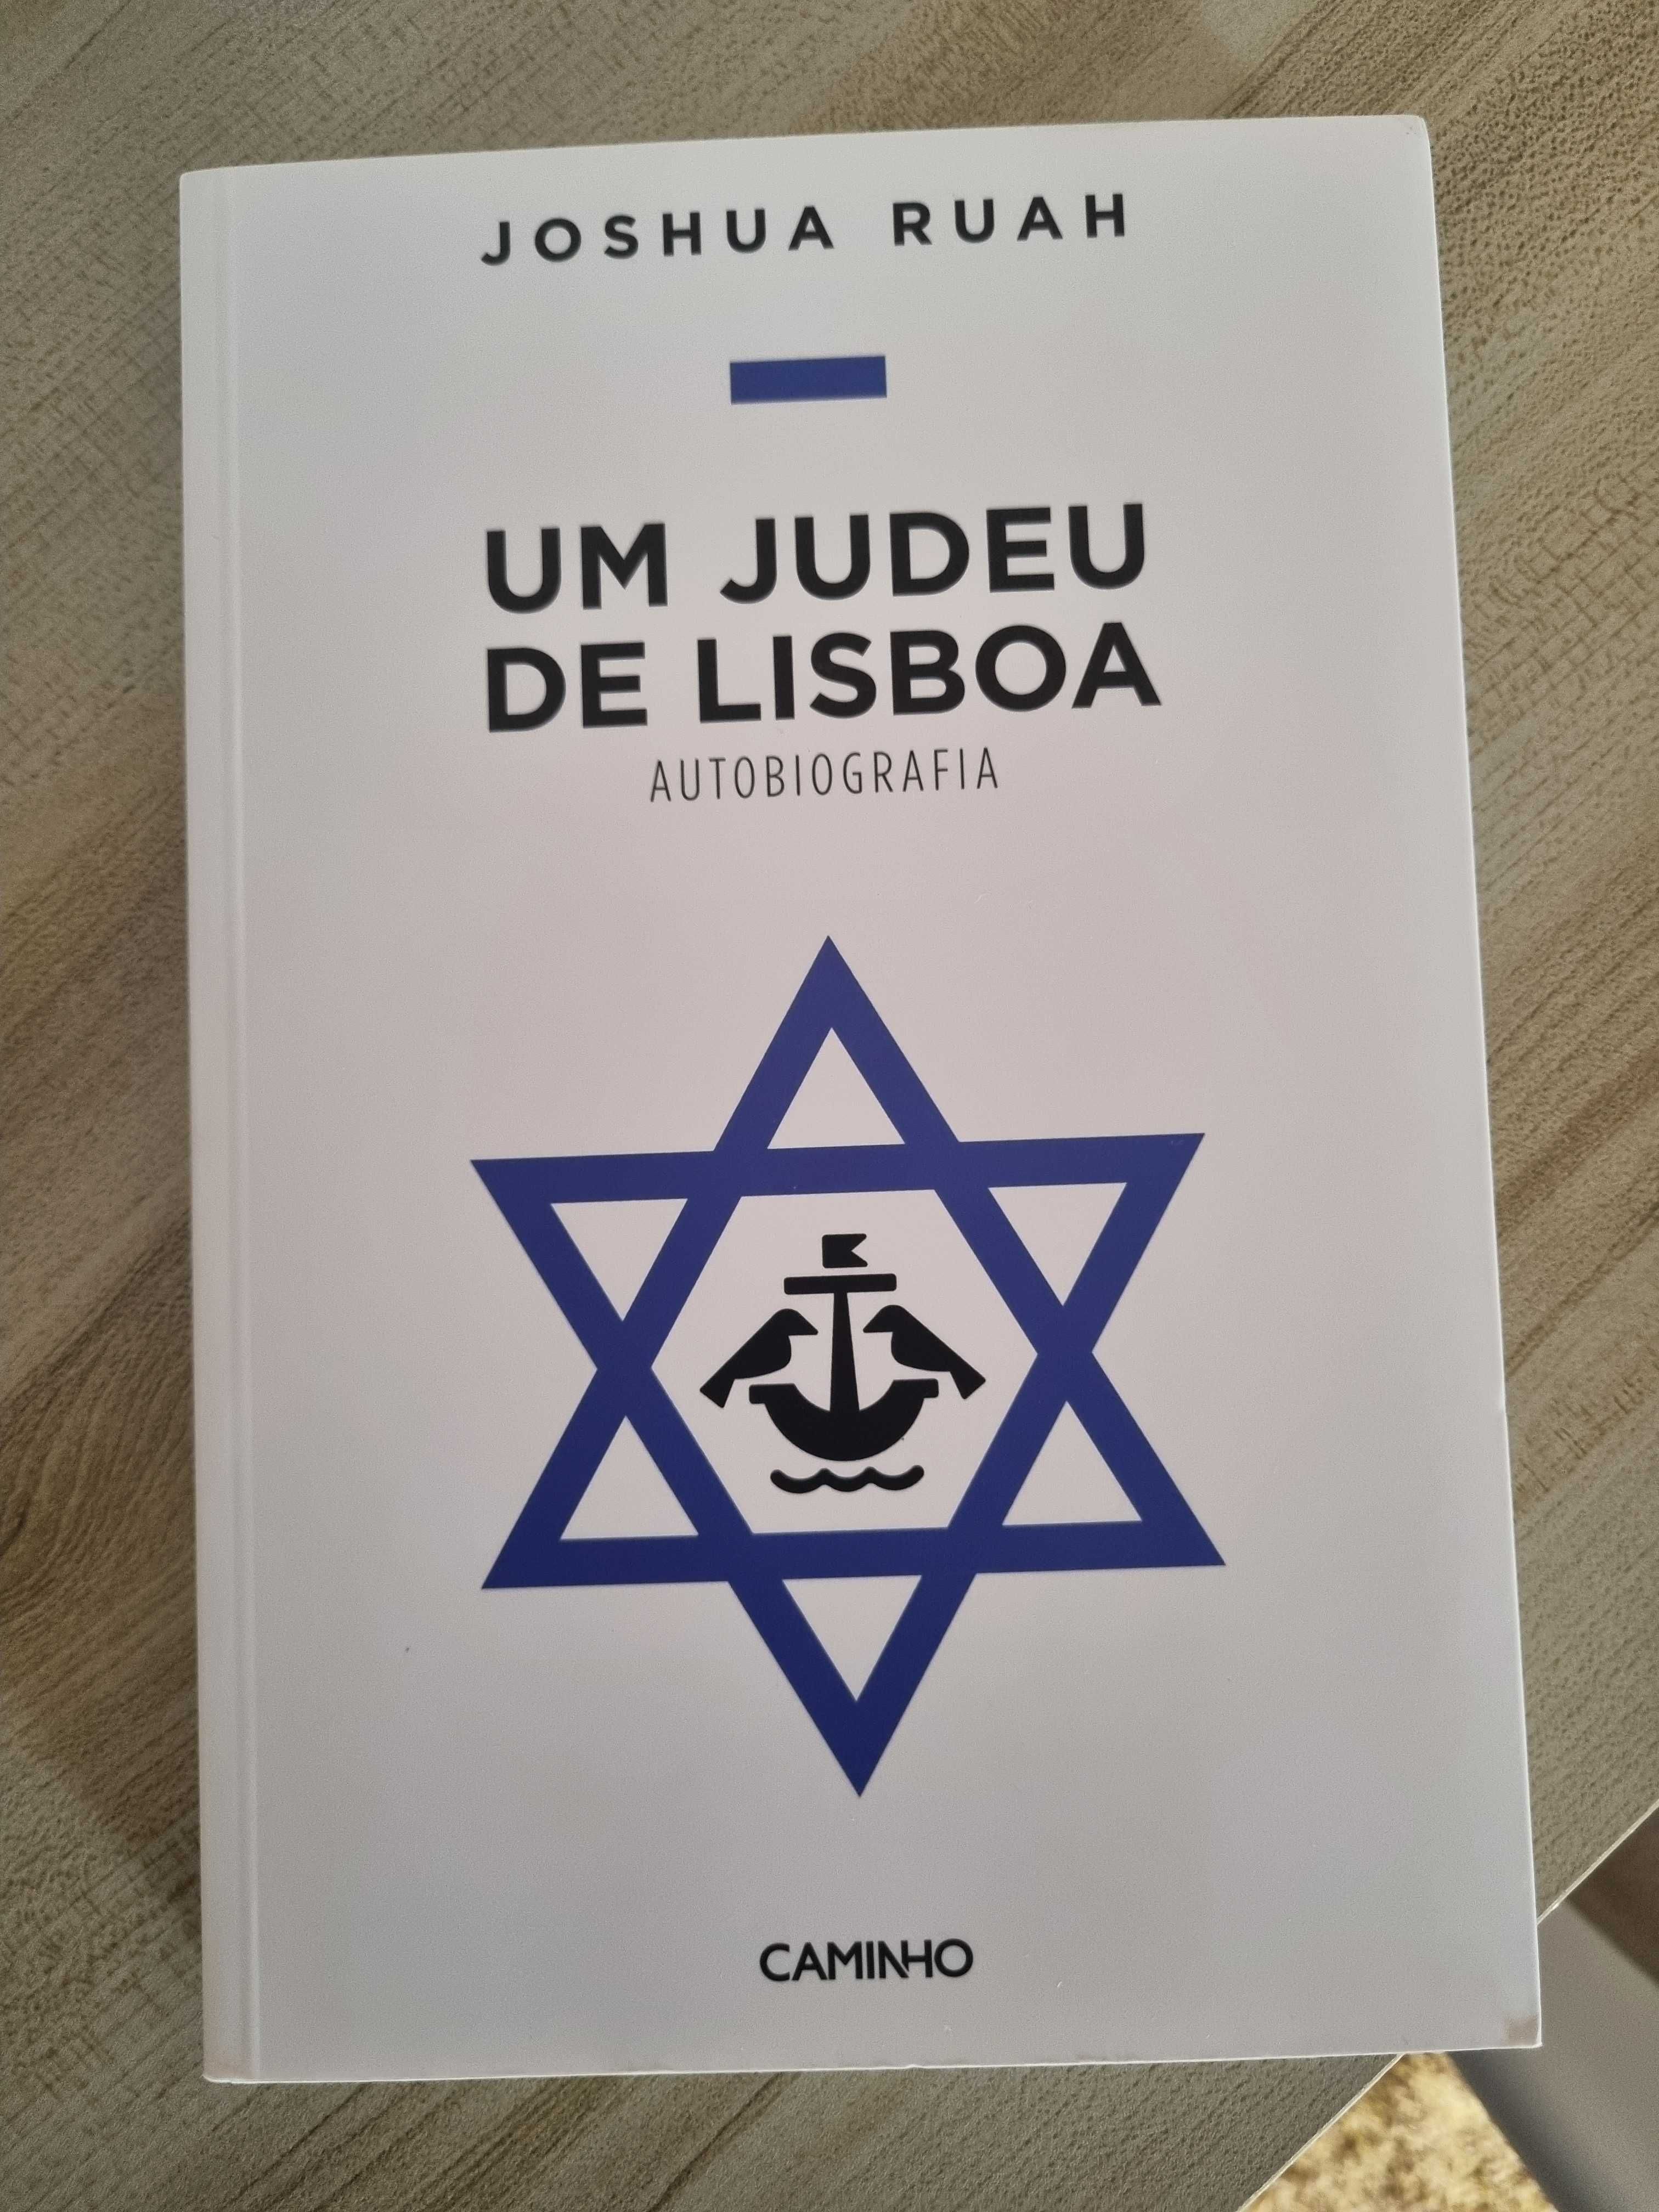 Livro "Um Judeu em Lisboa"